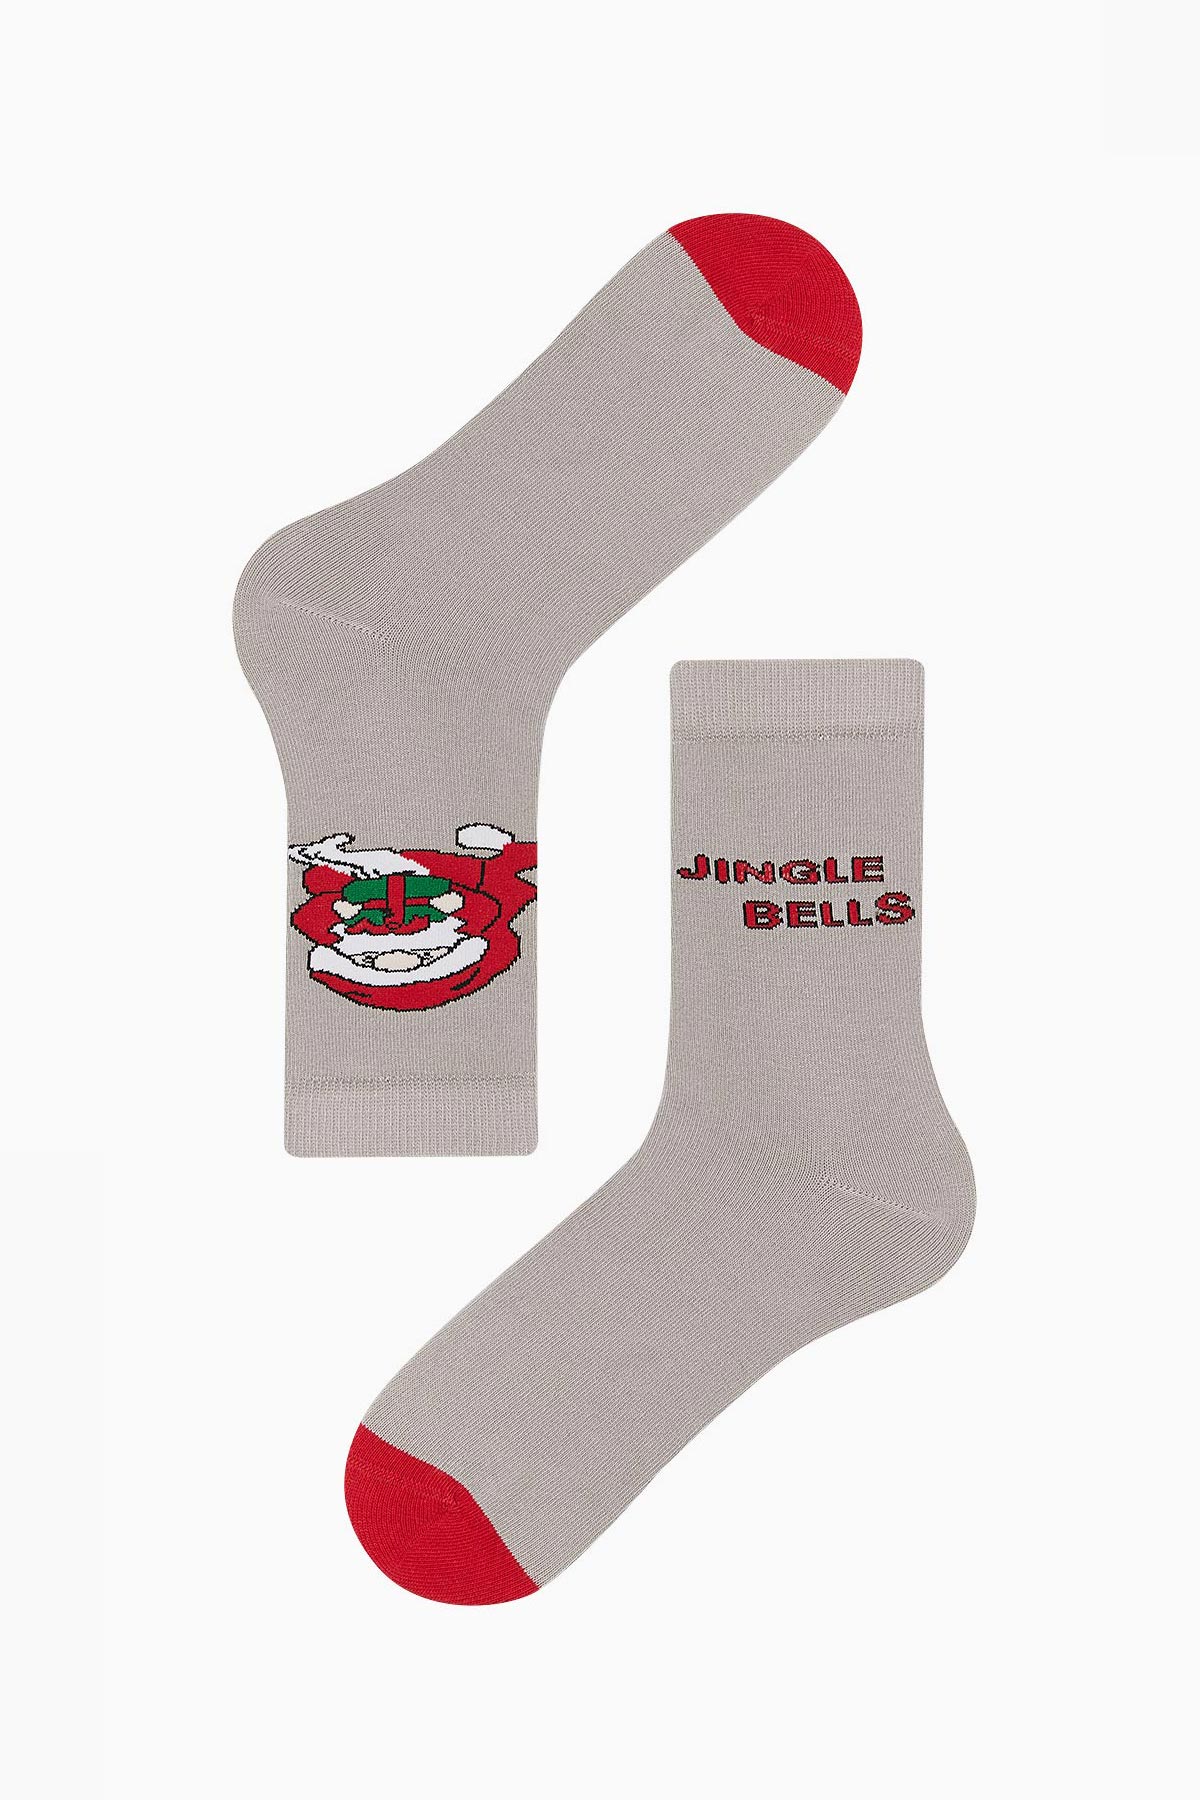 Bross - Bross Jingle Bells Yazılı Unisex Yılbaşı Çorabı